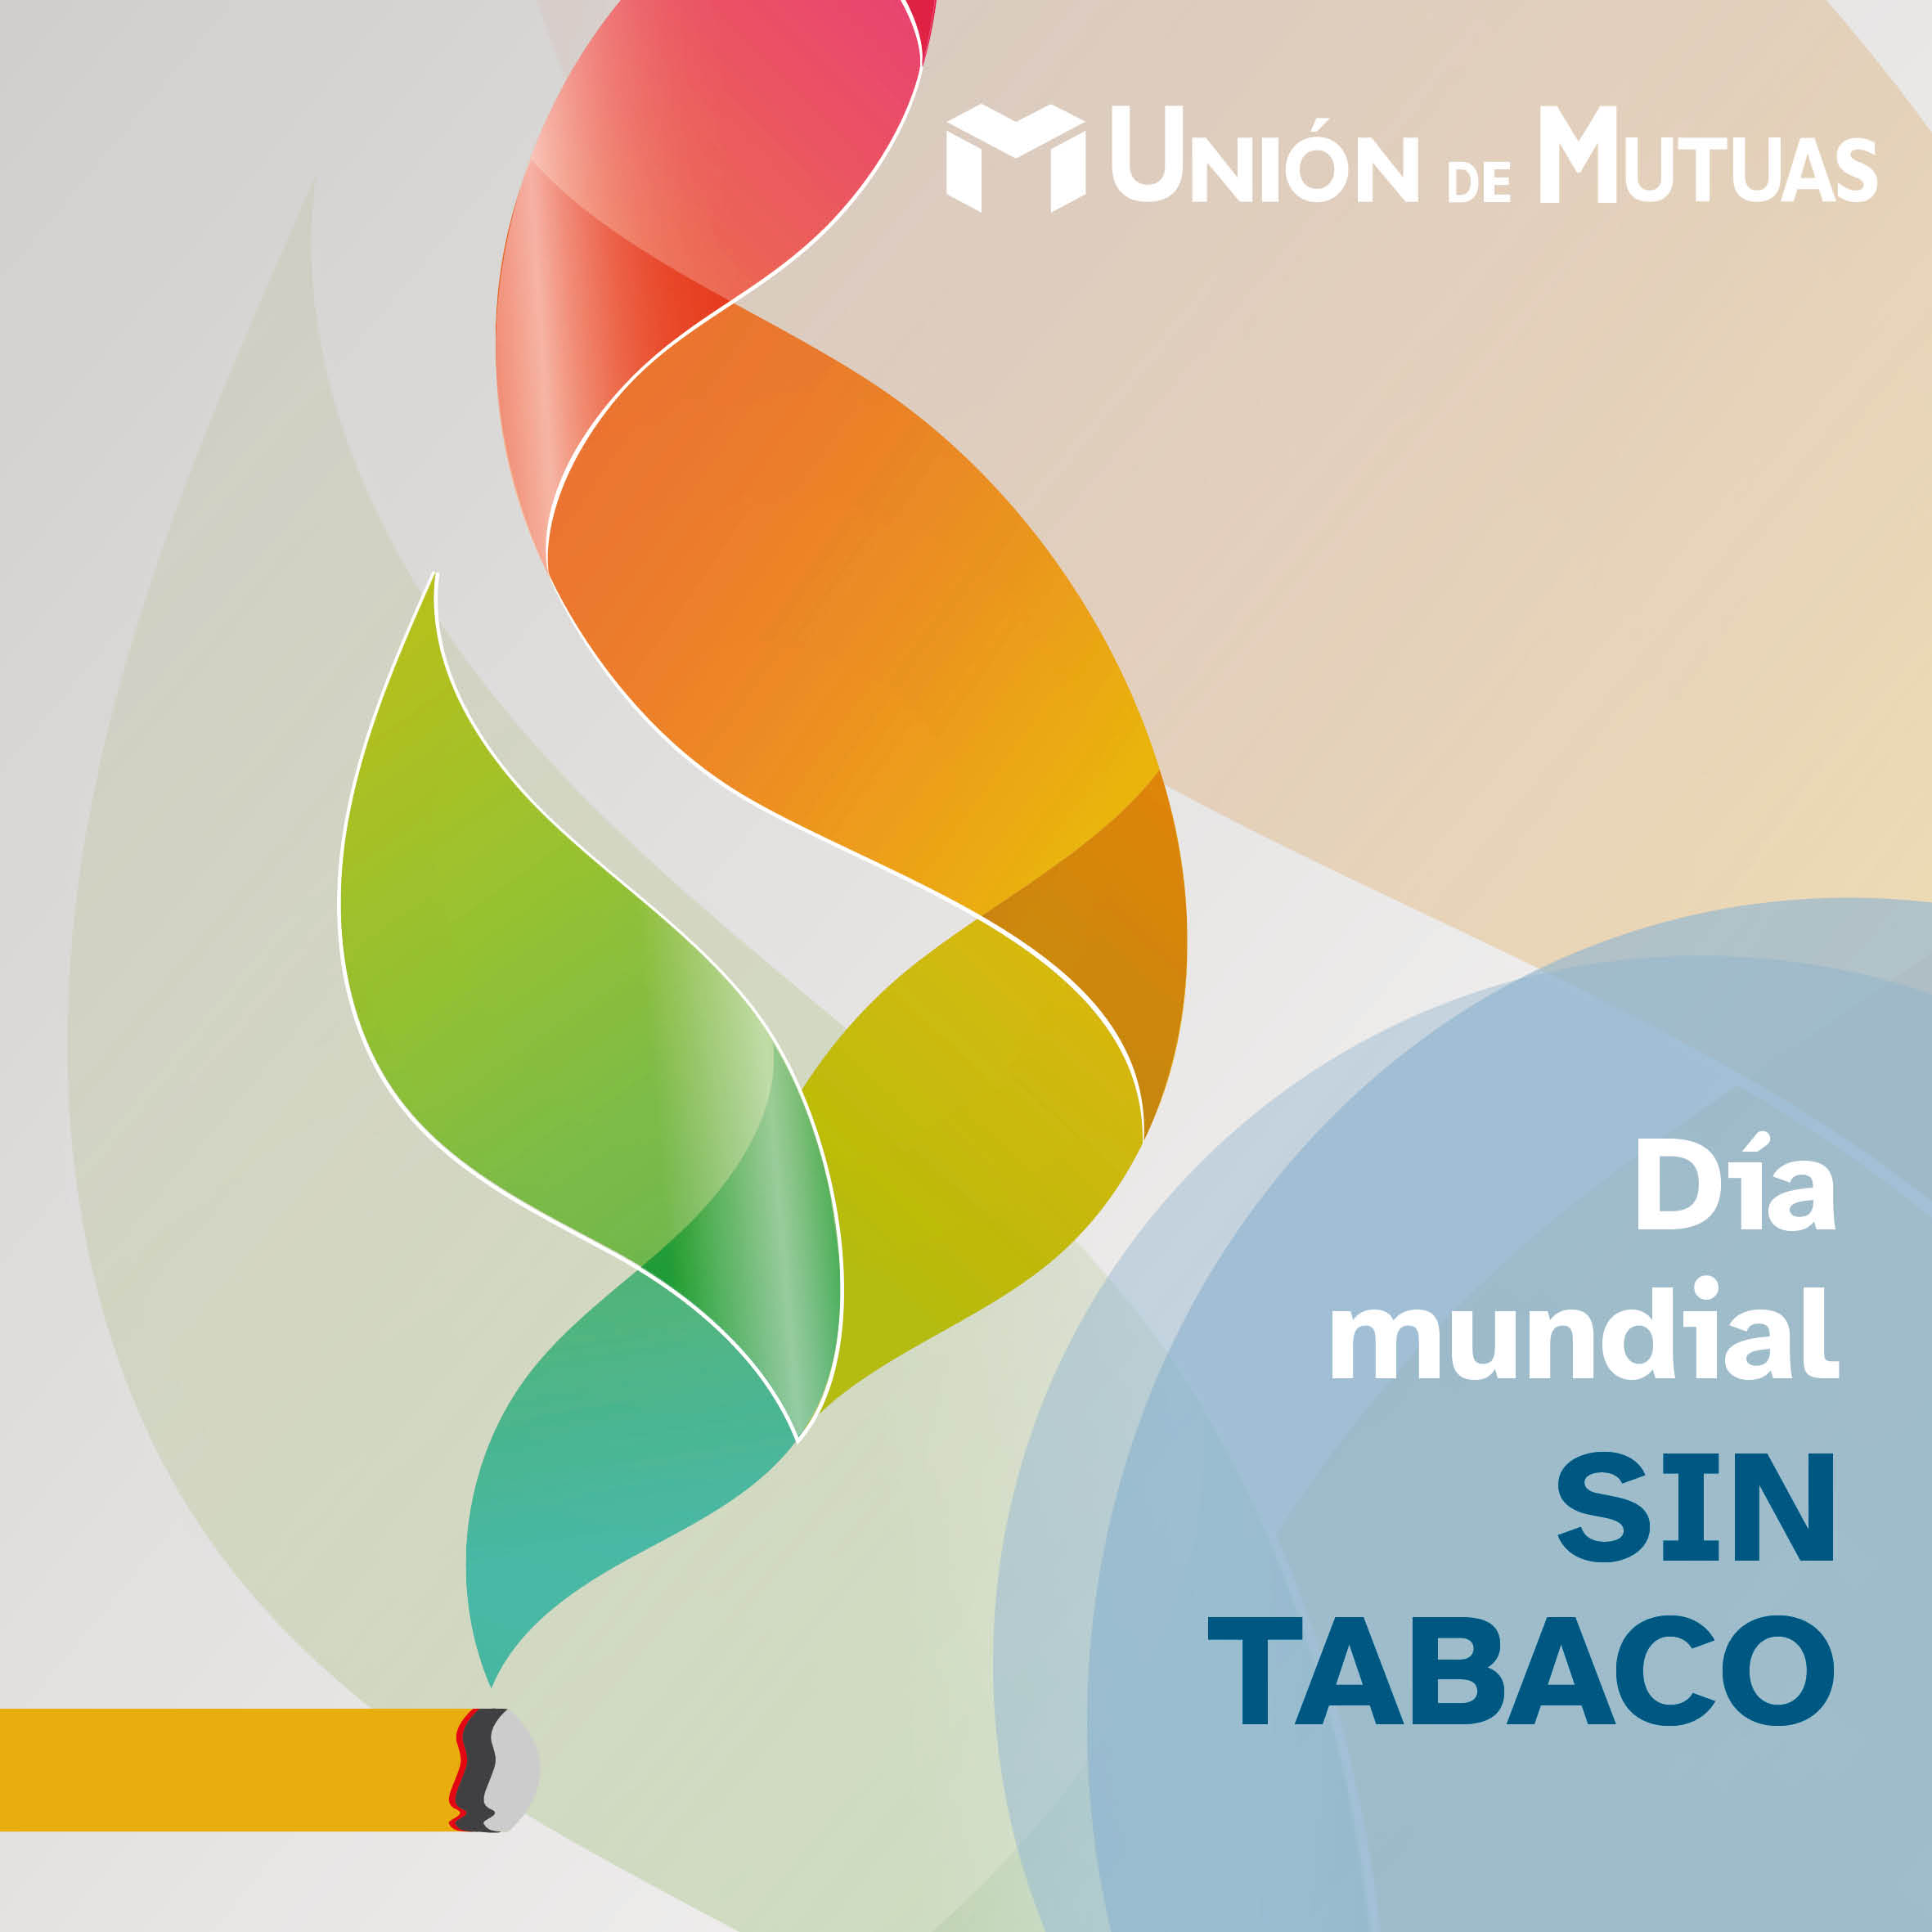 31 de mayo. Día mundial sin tabaco.￼